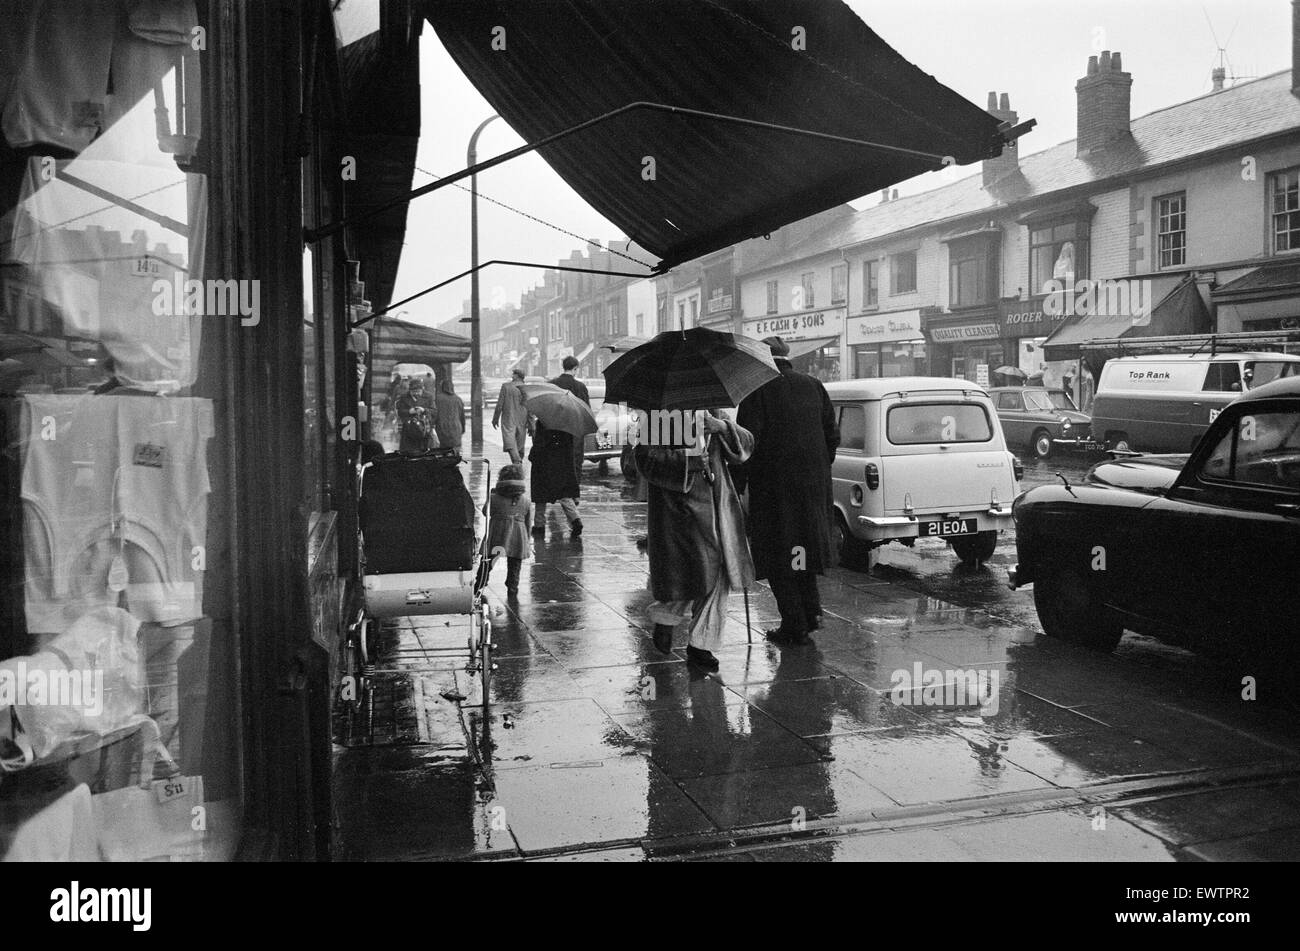 Scena di strada, Smethwick, una cittadina in Sandwell Metropolitan Borough, nella regione delle West Midlands in Inghilterra. Marzo 1964. Foto Stock